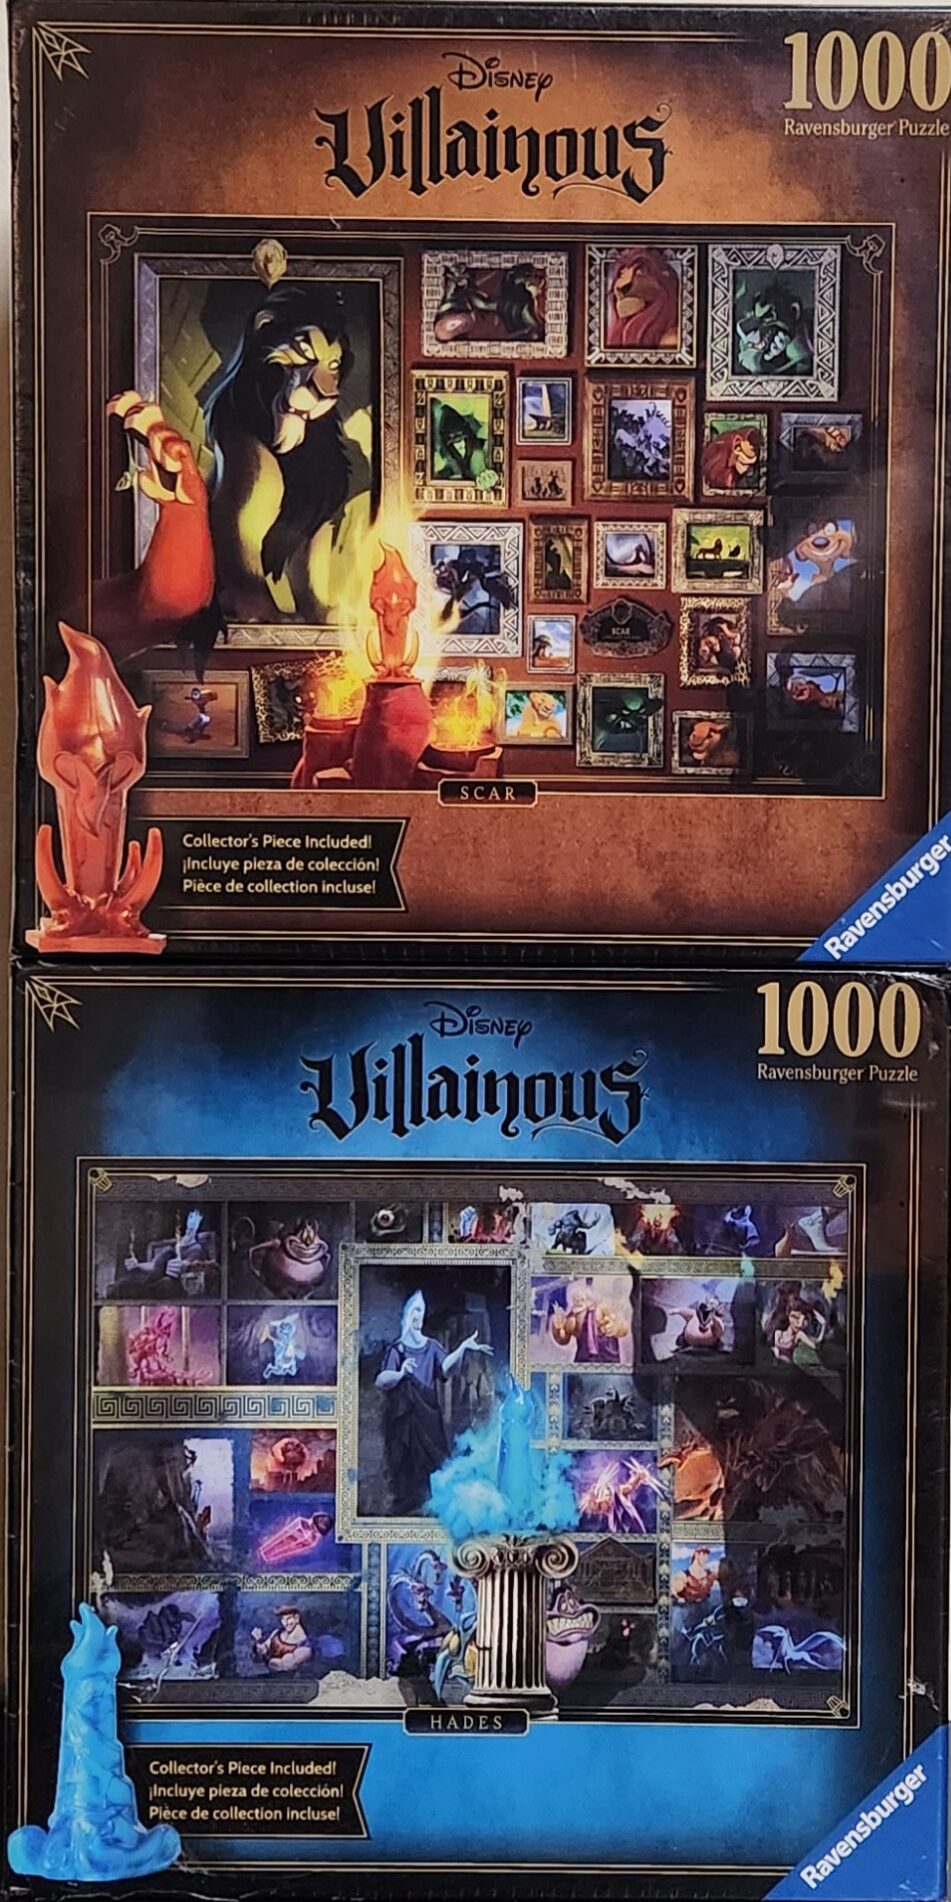 Disney Villainous: Hades (1000pc Puzzle)